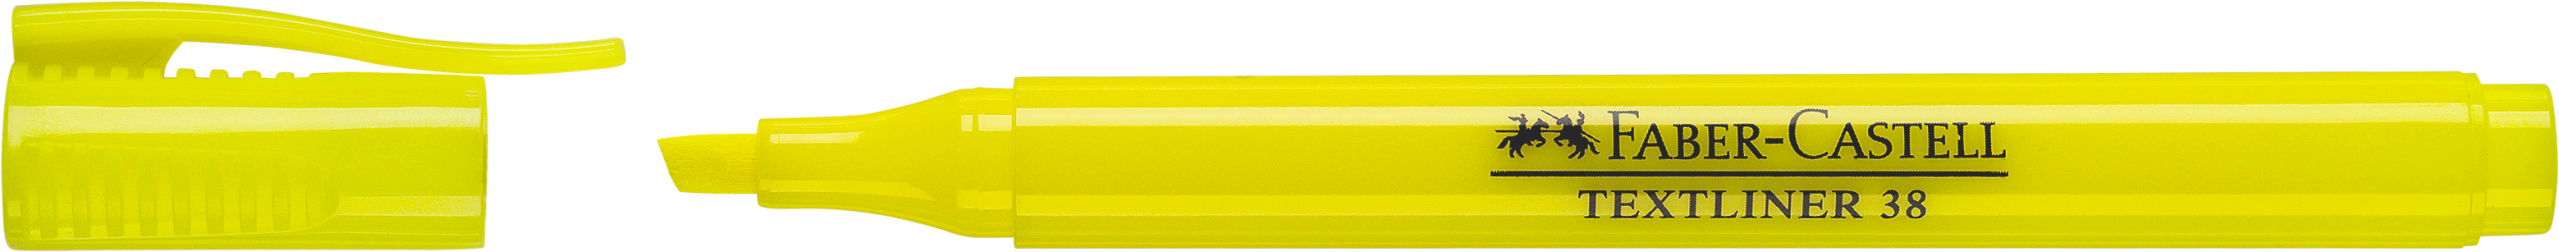 FABER-CASTELL Textmarker 38 1-4mm 157707 jaune